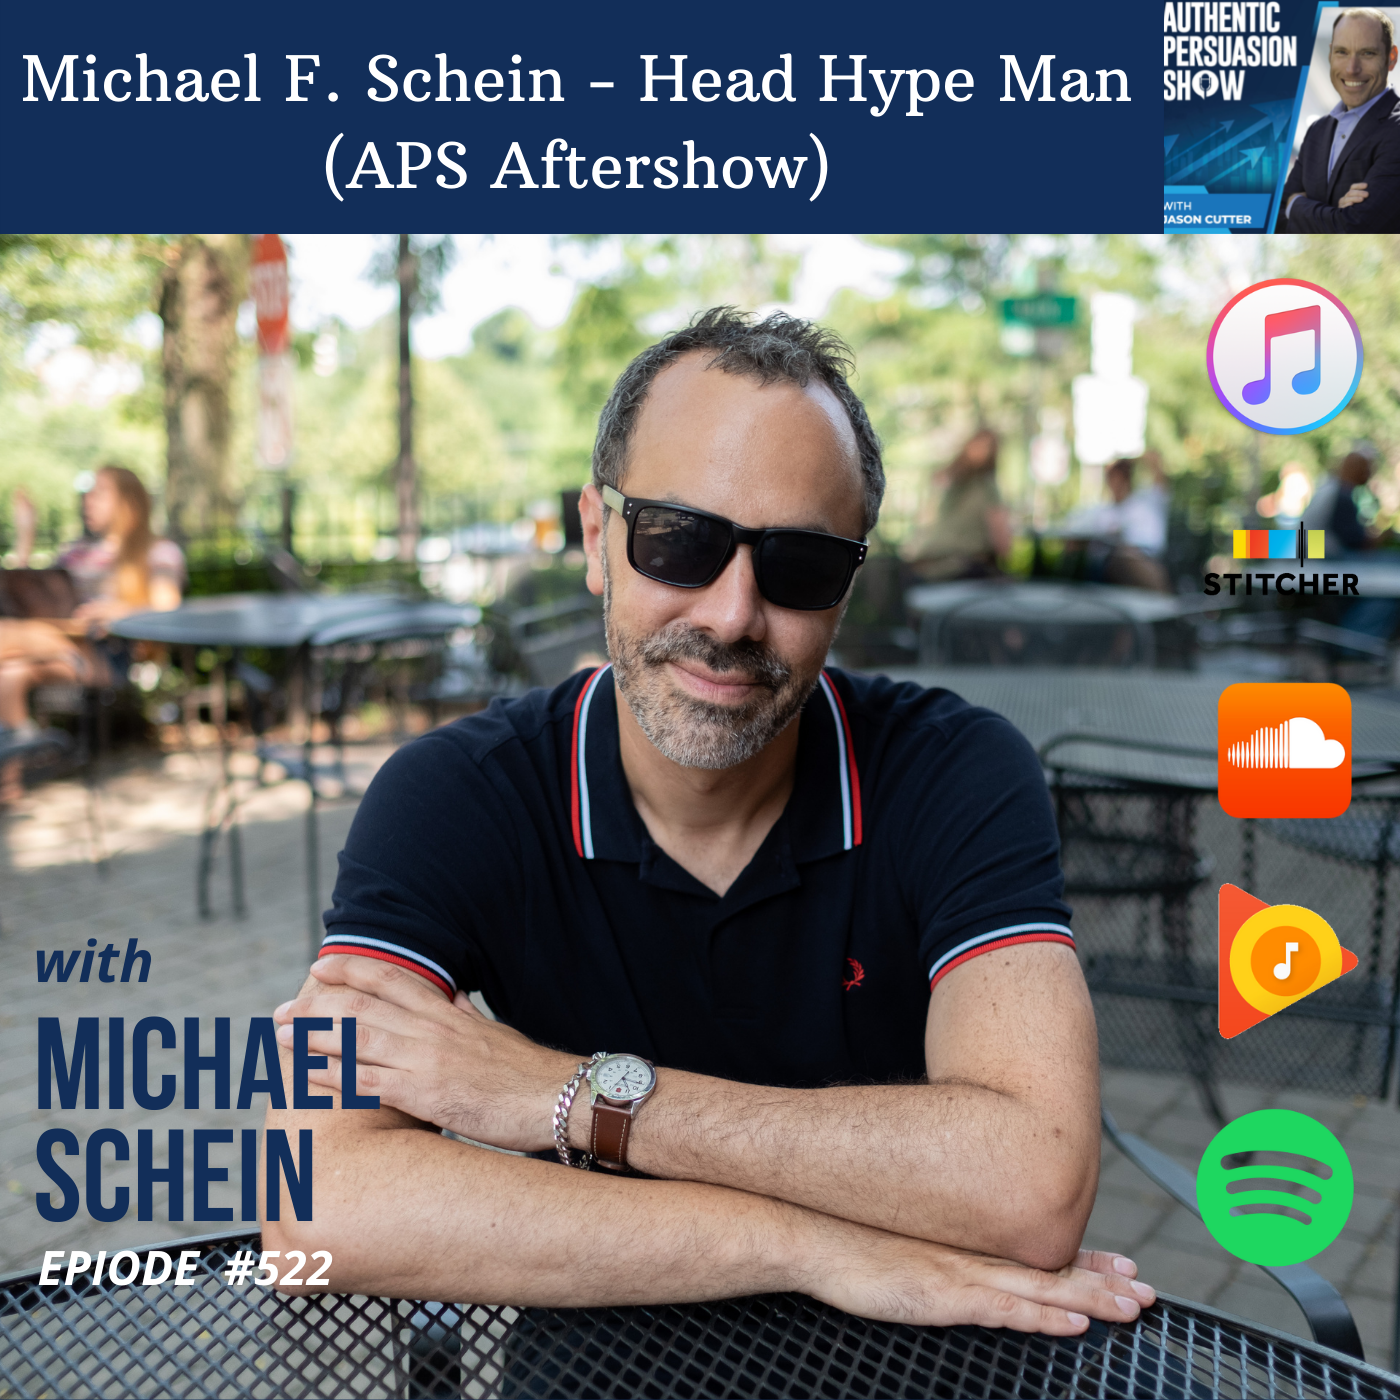 [522] Michael F. Schein - Head Hype Man (APS Aftershow)